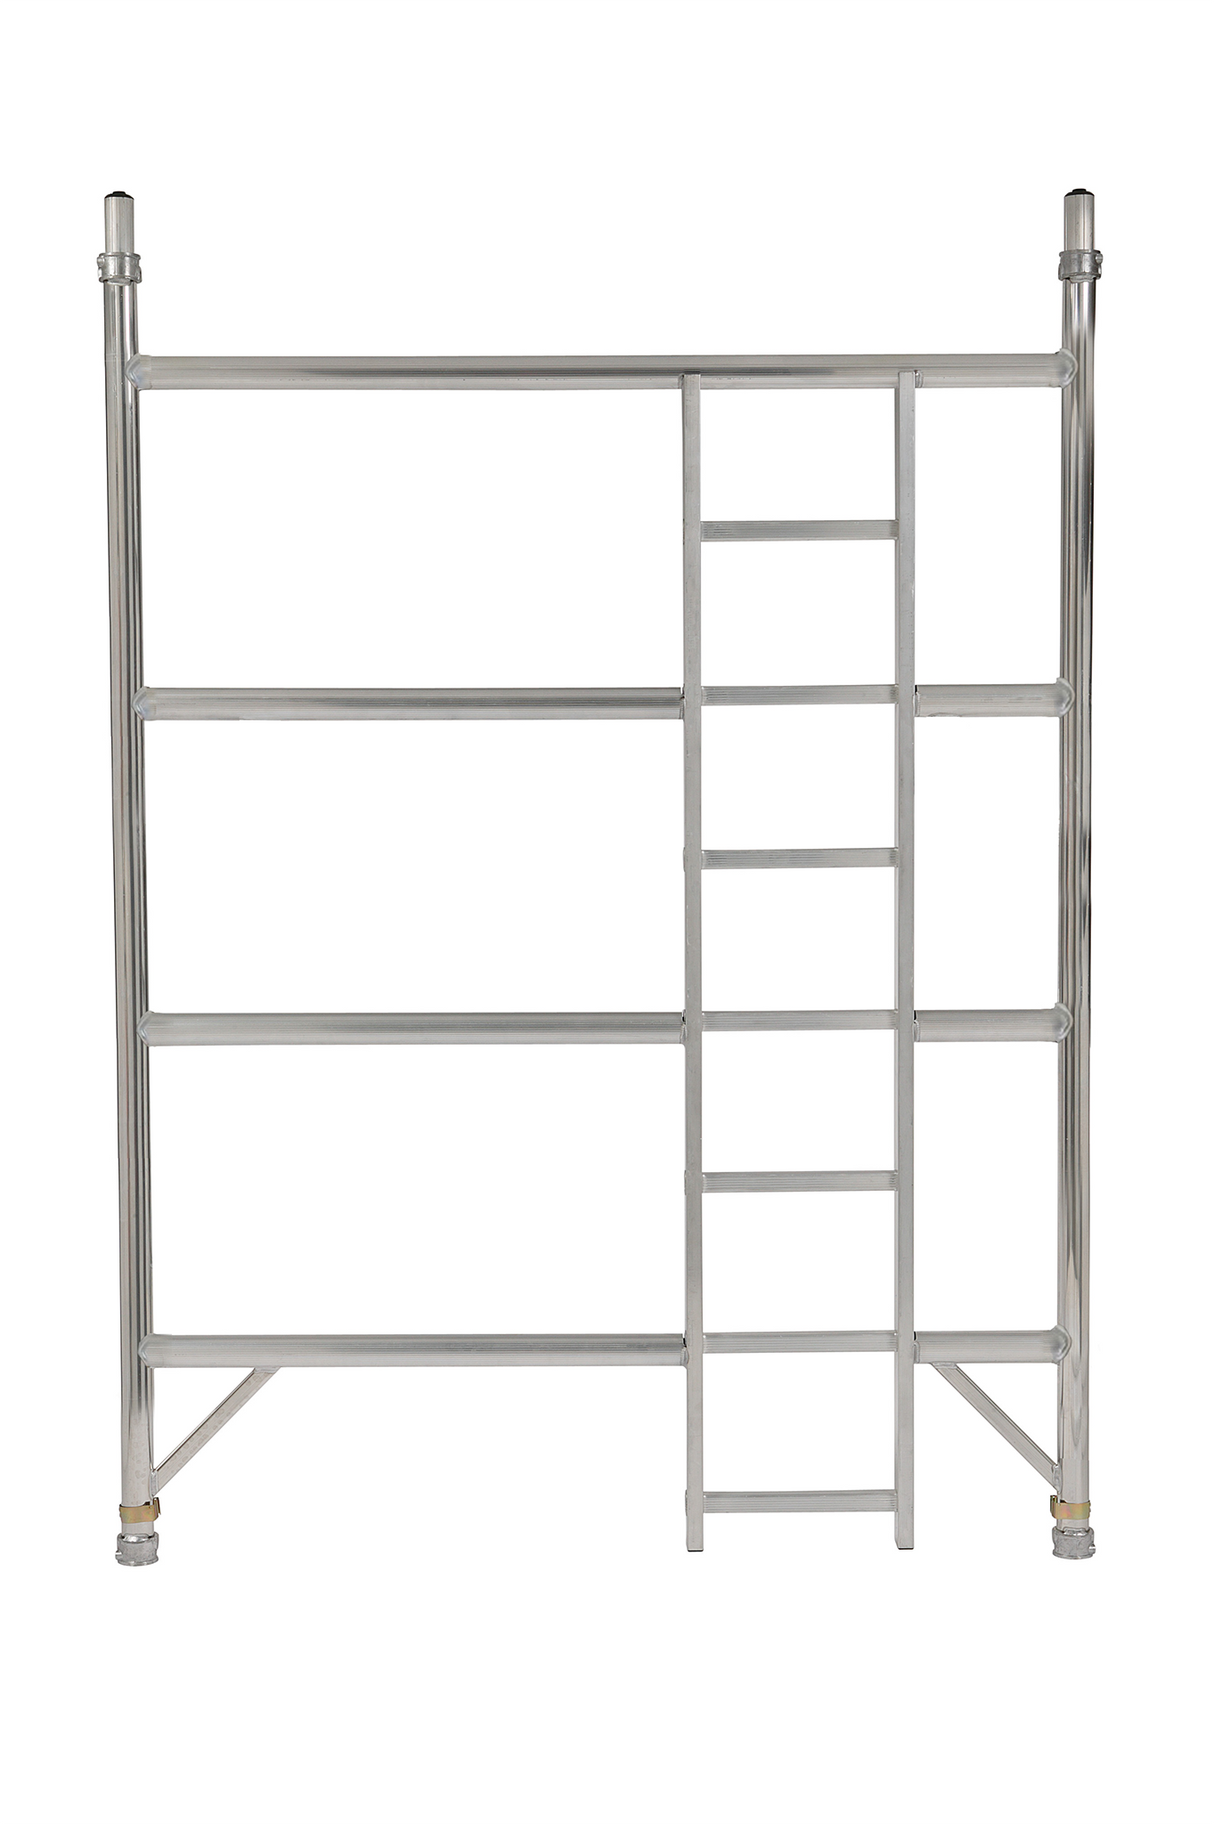 BoSS Double Width Ladder Frame - 4 Rung